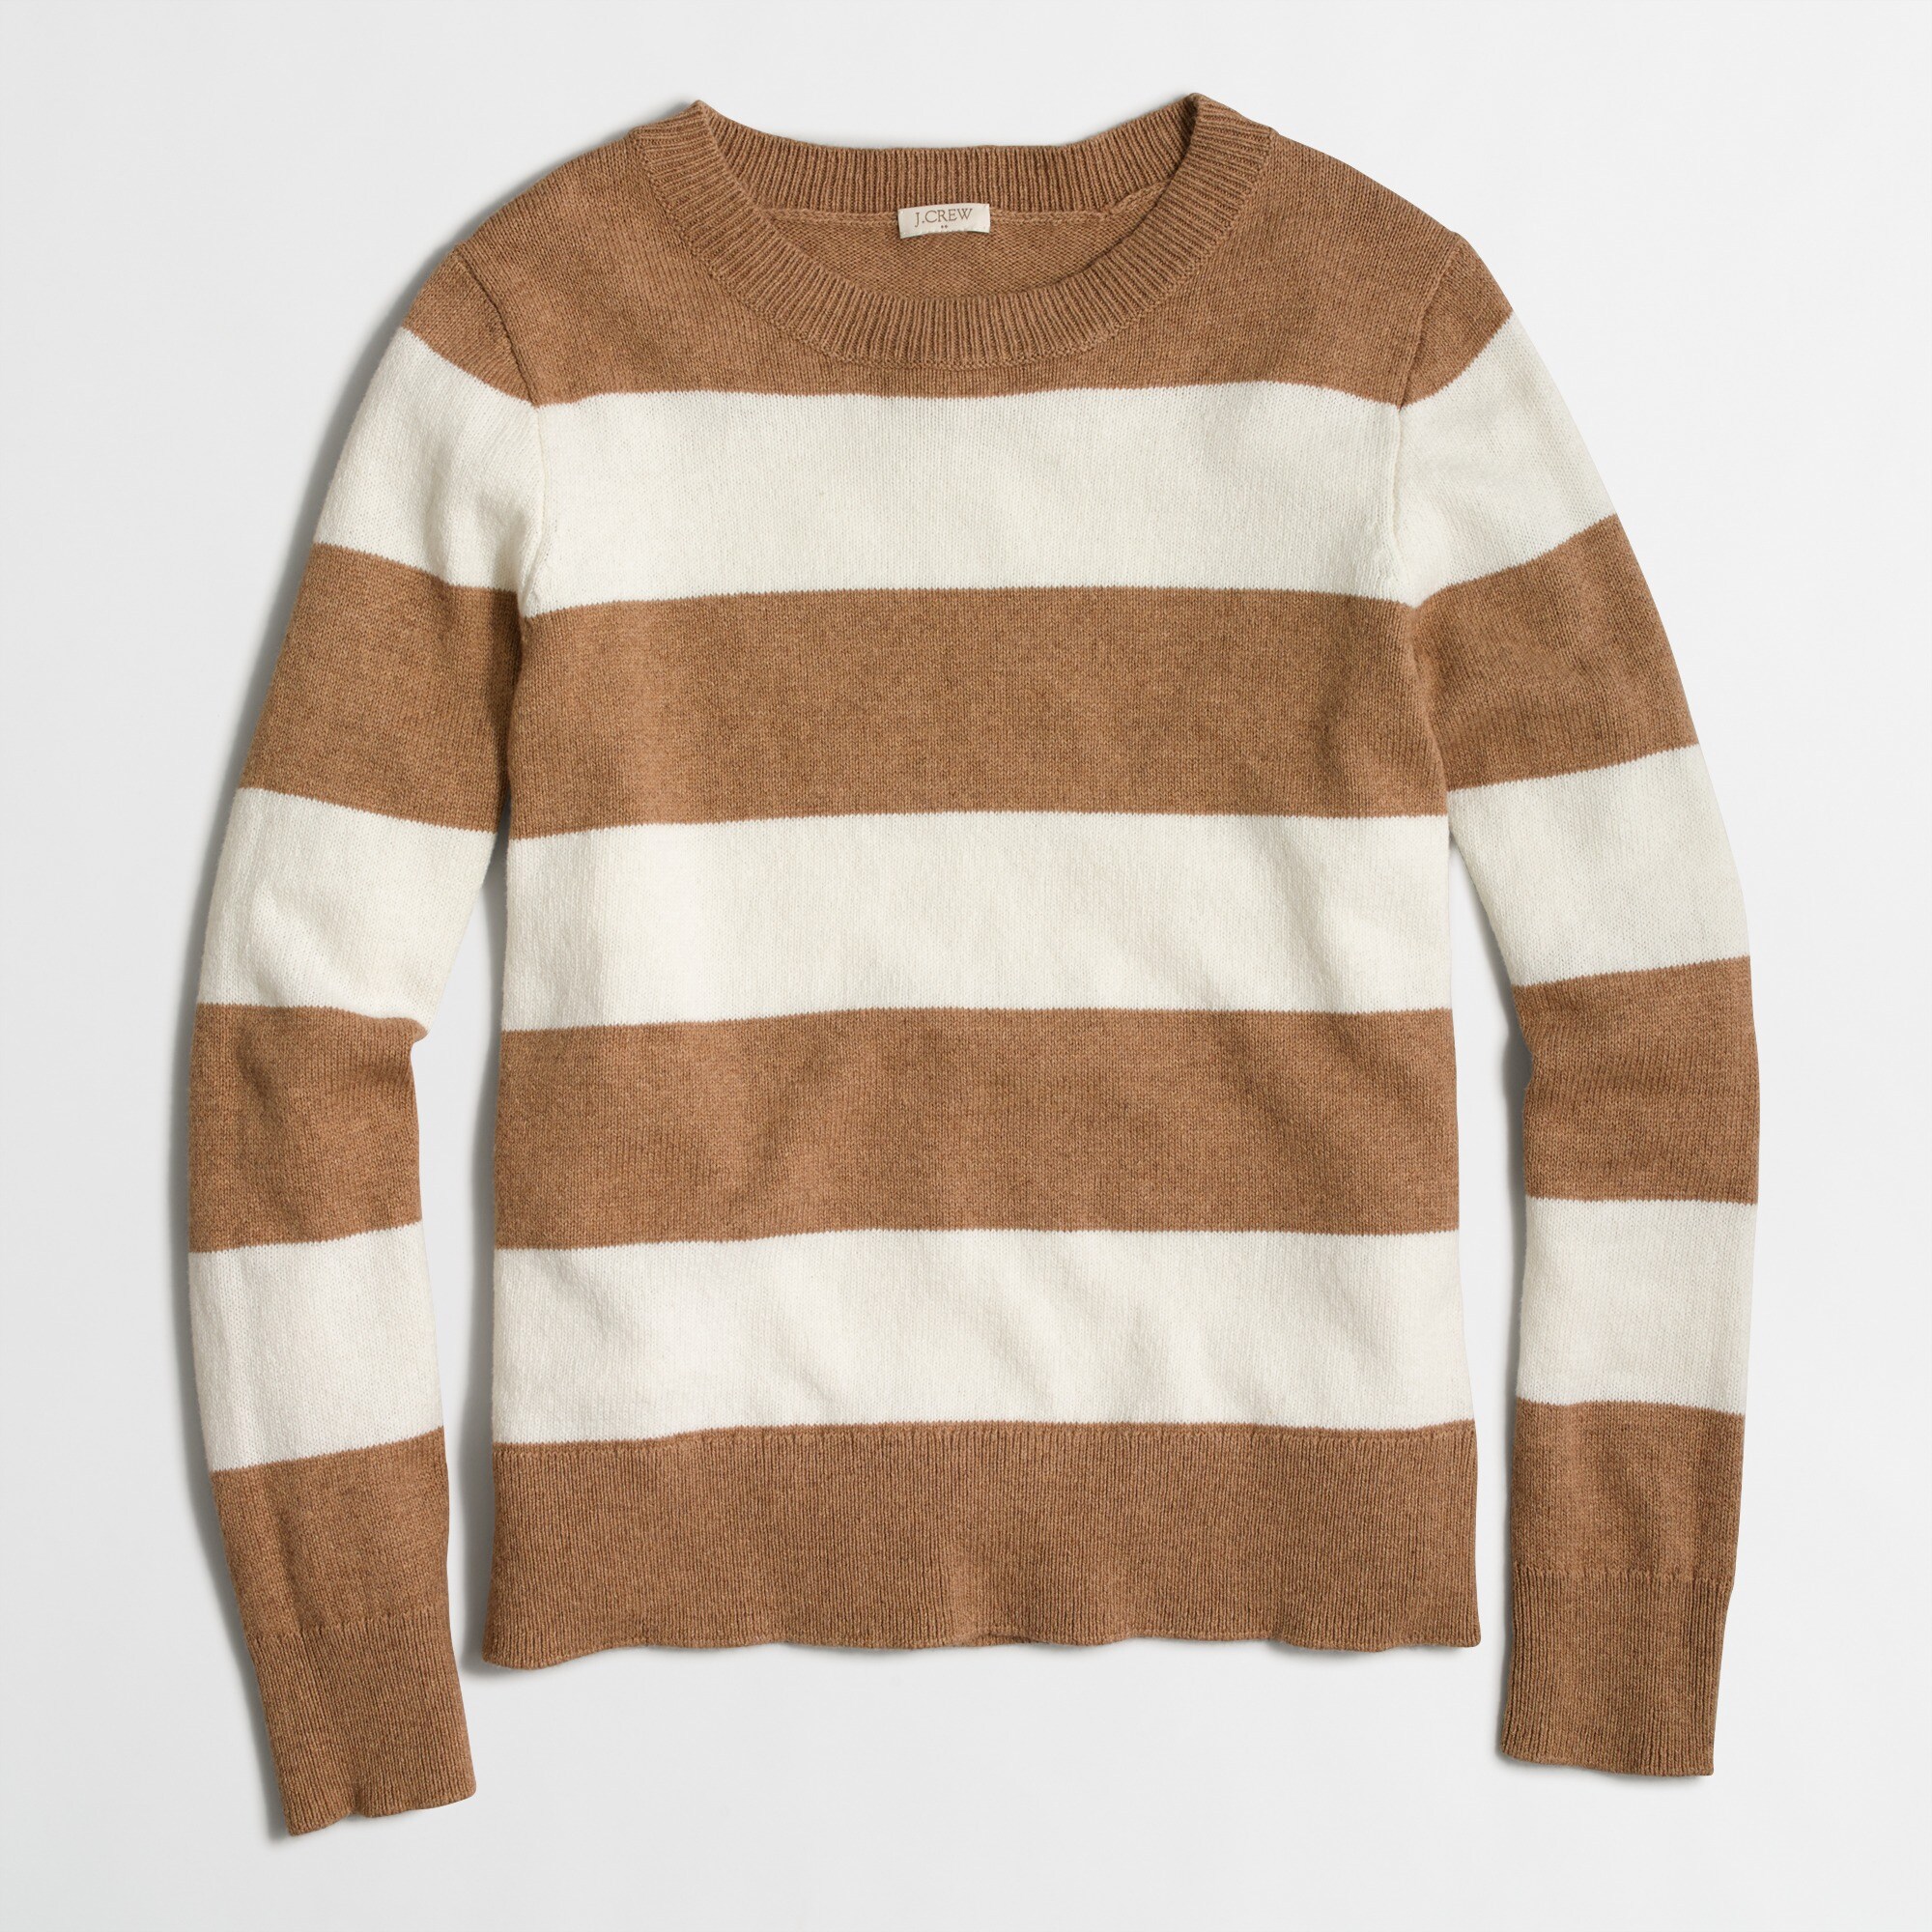  Wide-stripe sweater